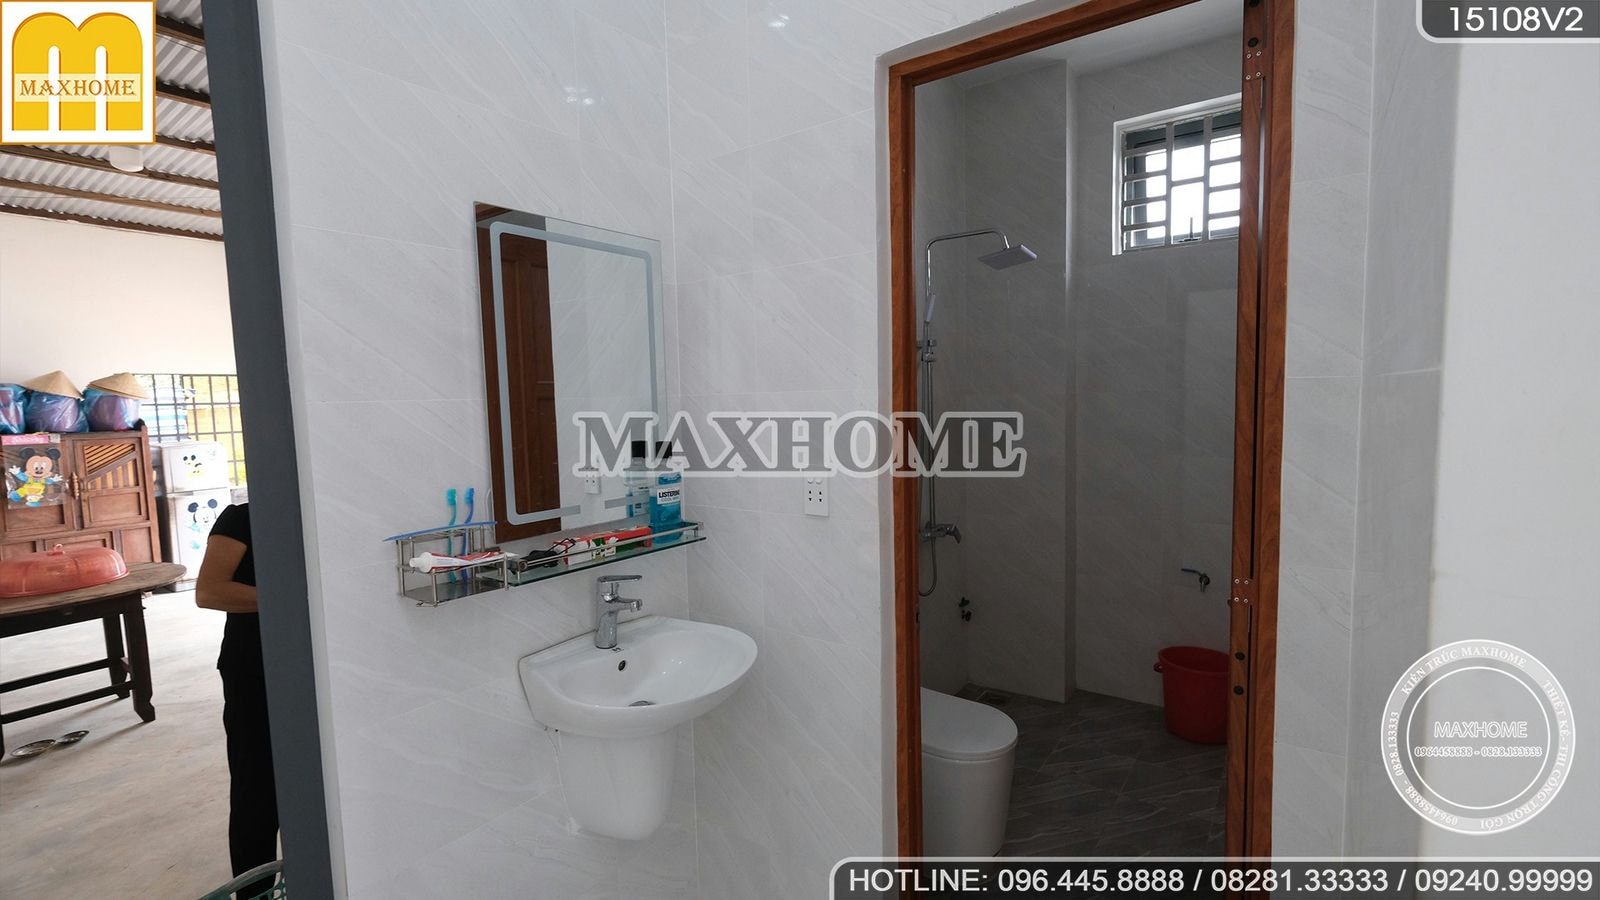 Maxhome bố trí nội thất tinh tế cho căn nhà 2 tầng ở Tây Ninh | MH01343